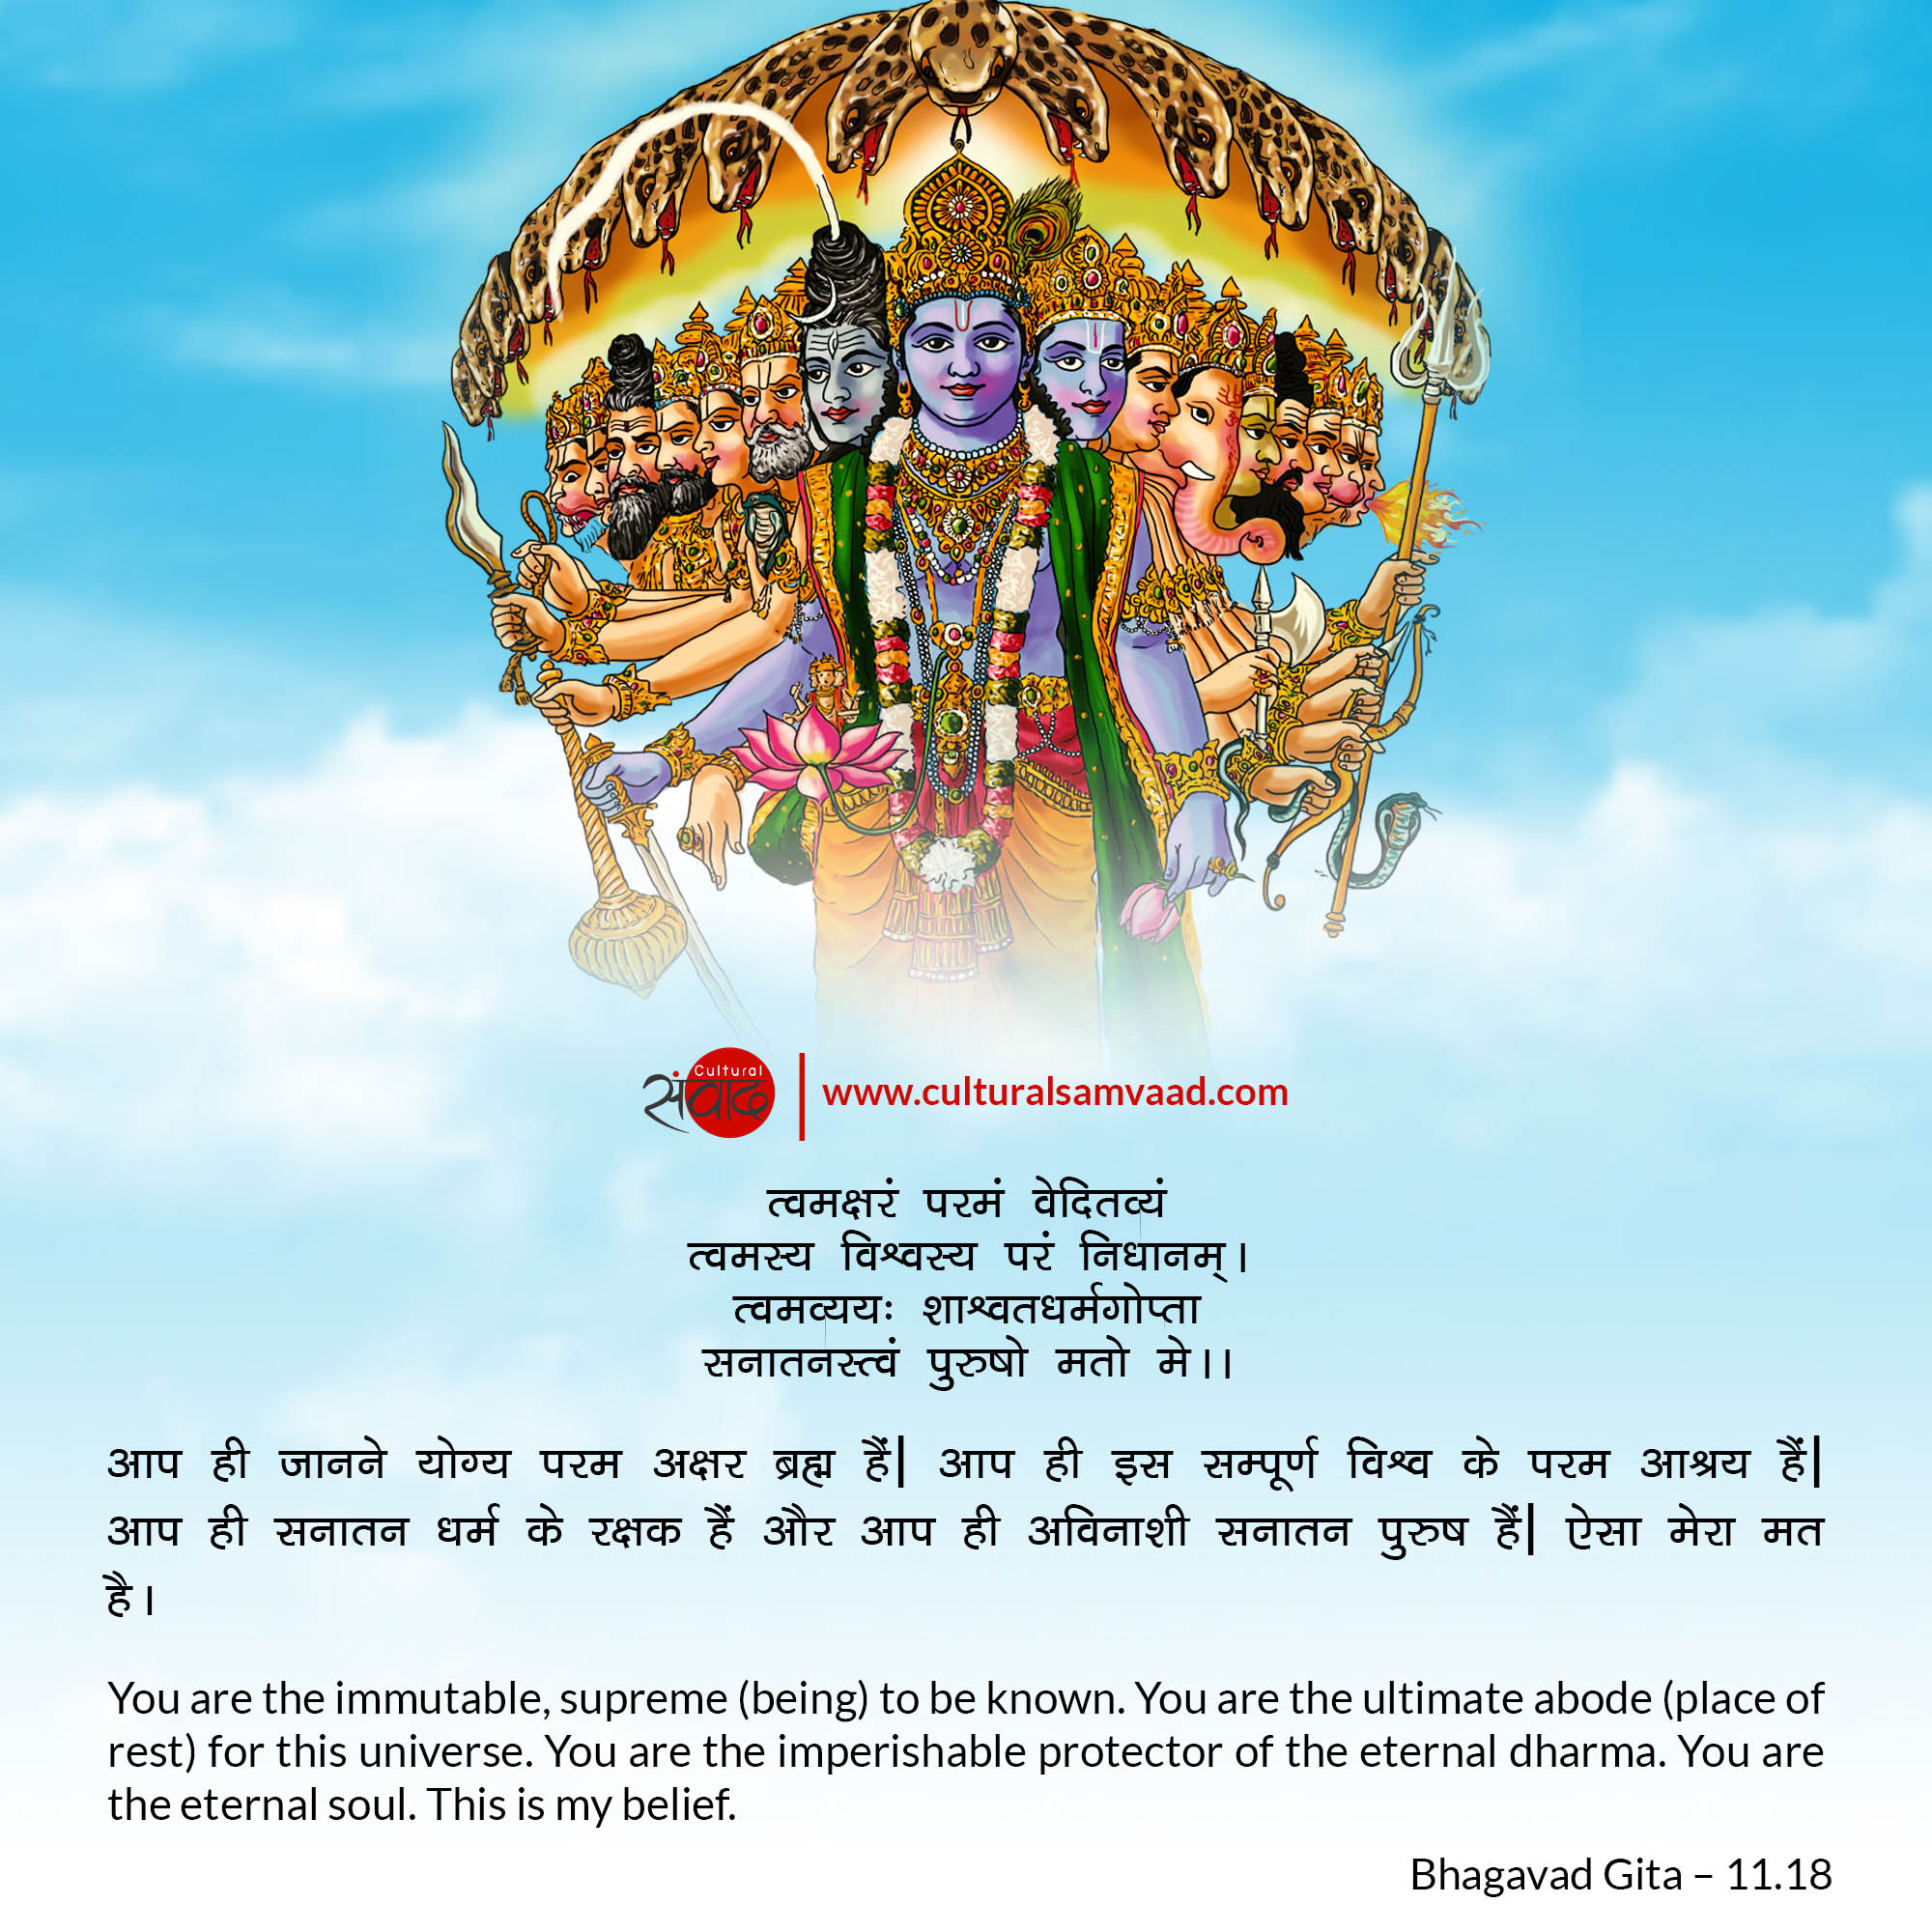 Bhagavad Gita 11.18 Vishvaroopa Darshan